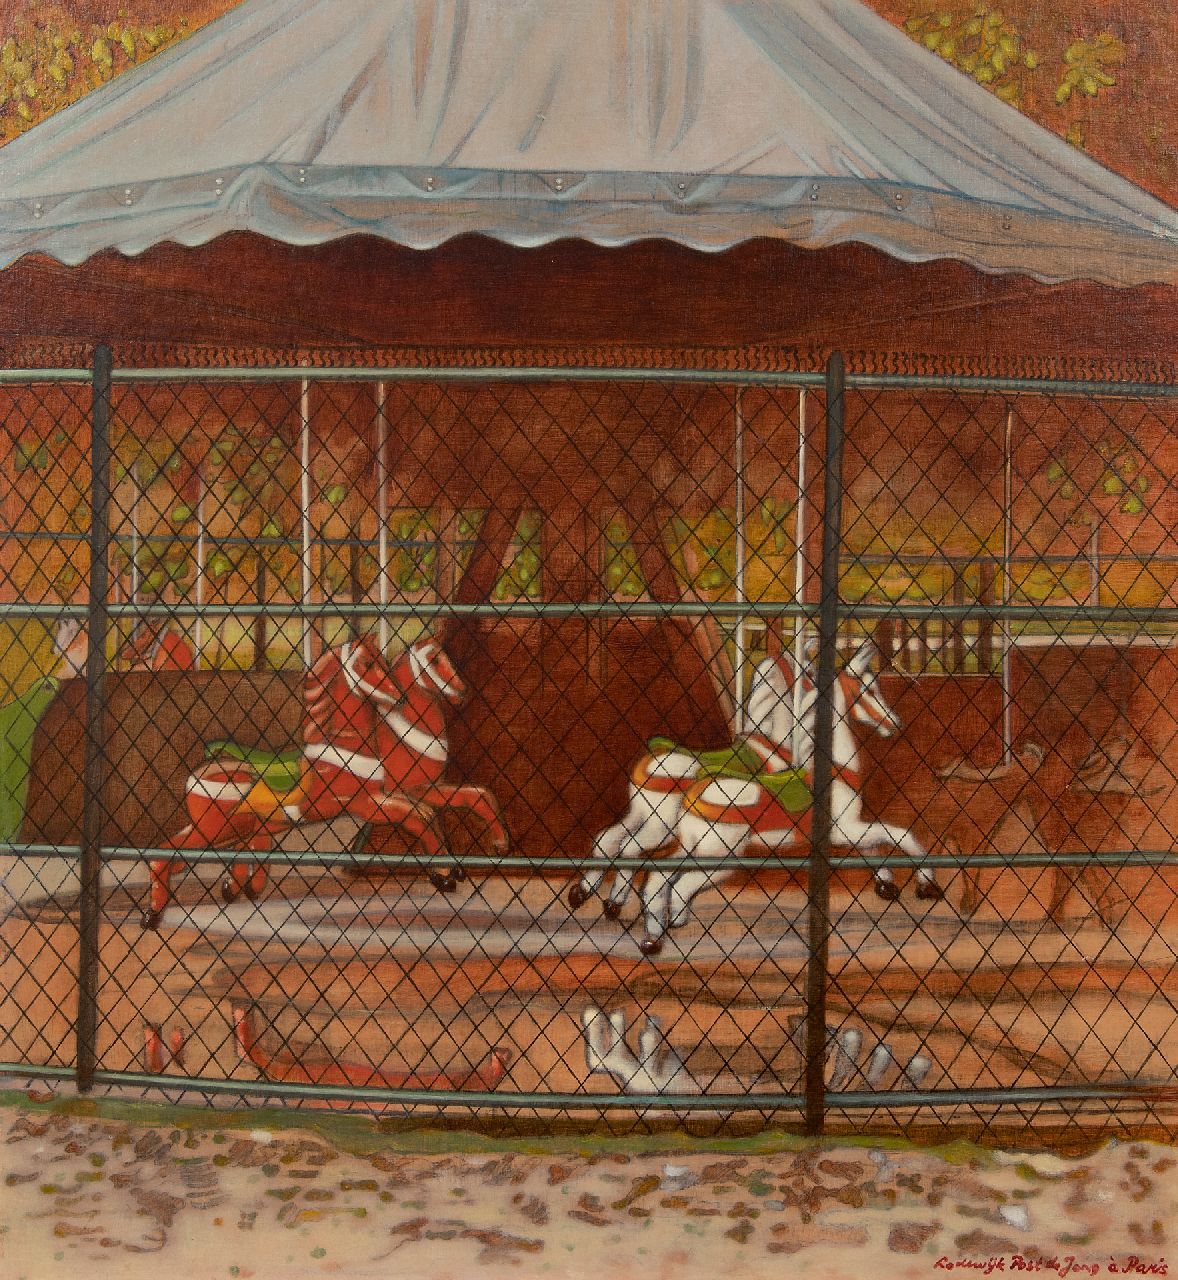 Post de Jong L.N.  | Lodewijk Nicolaas Post de Jong | Schilderijen te koop aangeboden | Carrousel in Parijs, olieverf op board 62,2 x 56,8 cm, gesigneerd rechtsonder